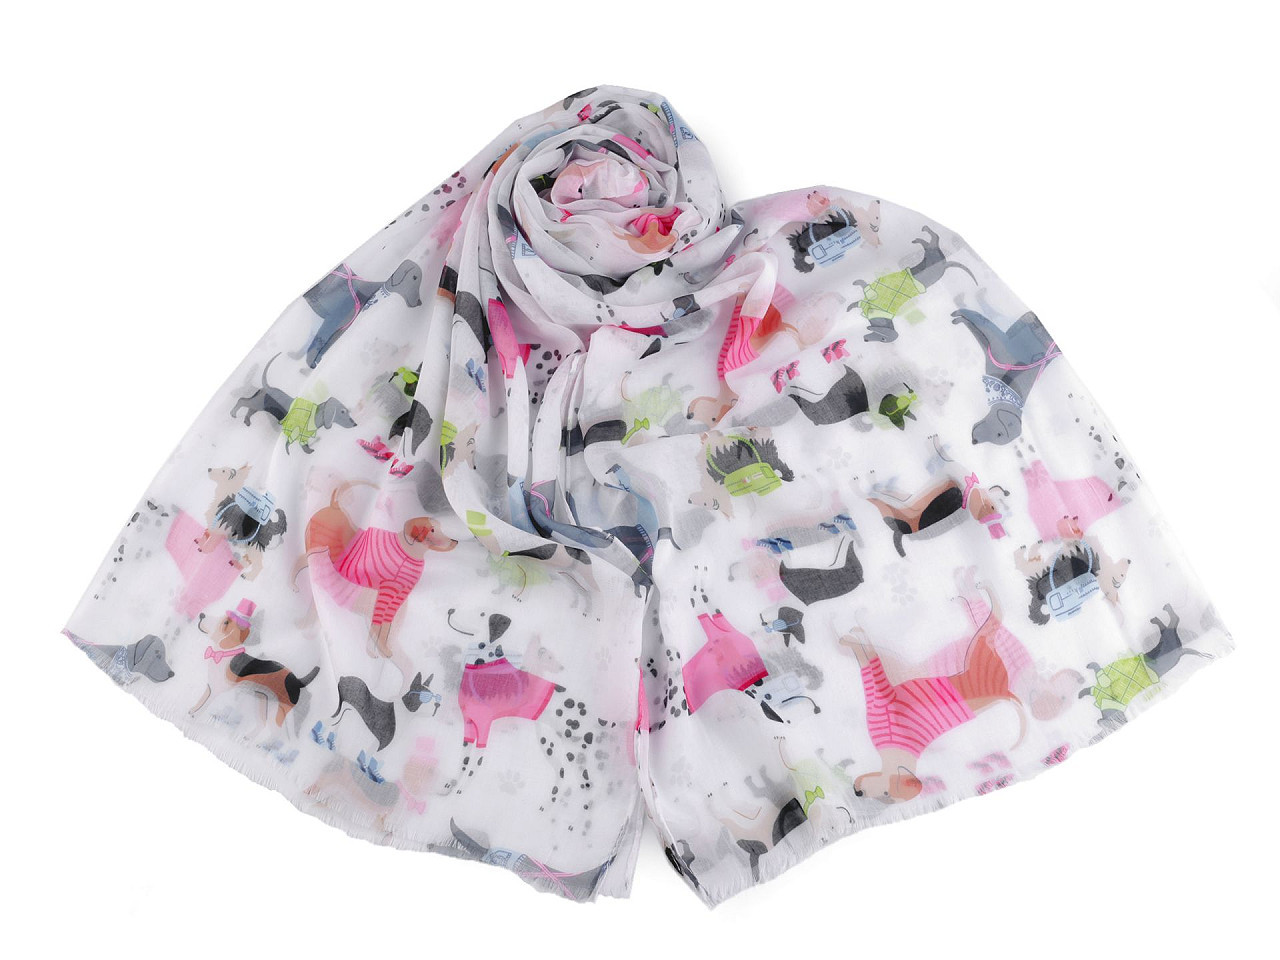 Letní šátek / šála jezevčík, buldoček 75x180 cm, barva 5 bílá